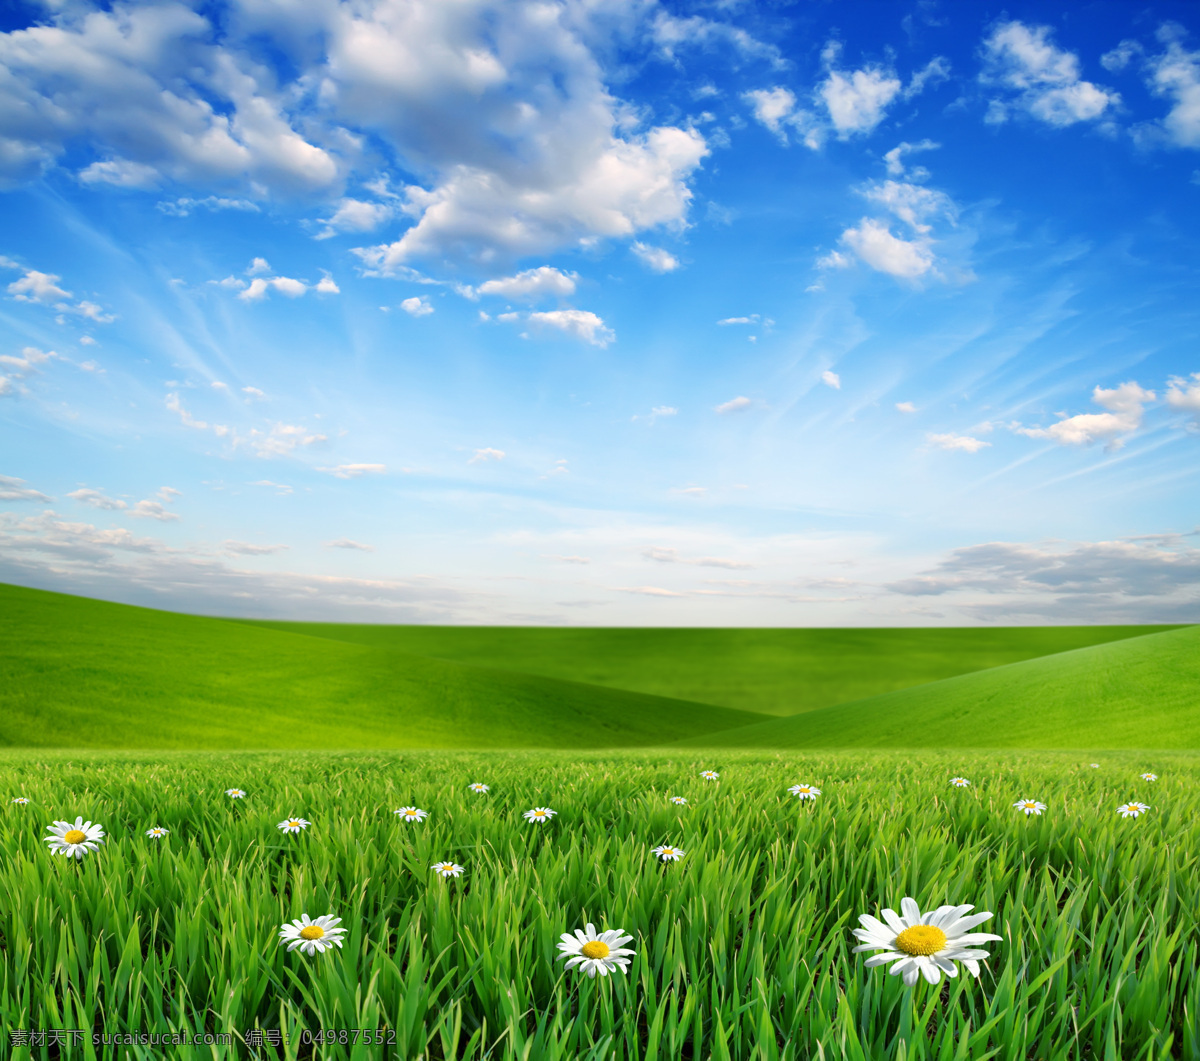 蓝天 白云 下 草原 美丽风景 景色 美景 蓝天白云 鲜花 野花 草地 平原 青草 绿地 风景图片